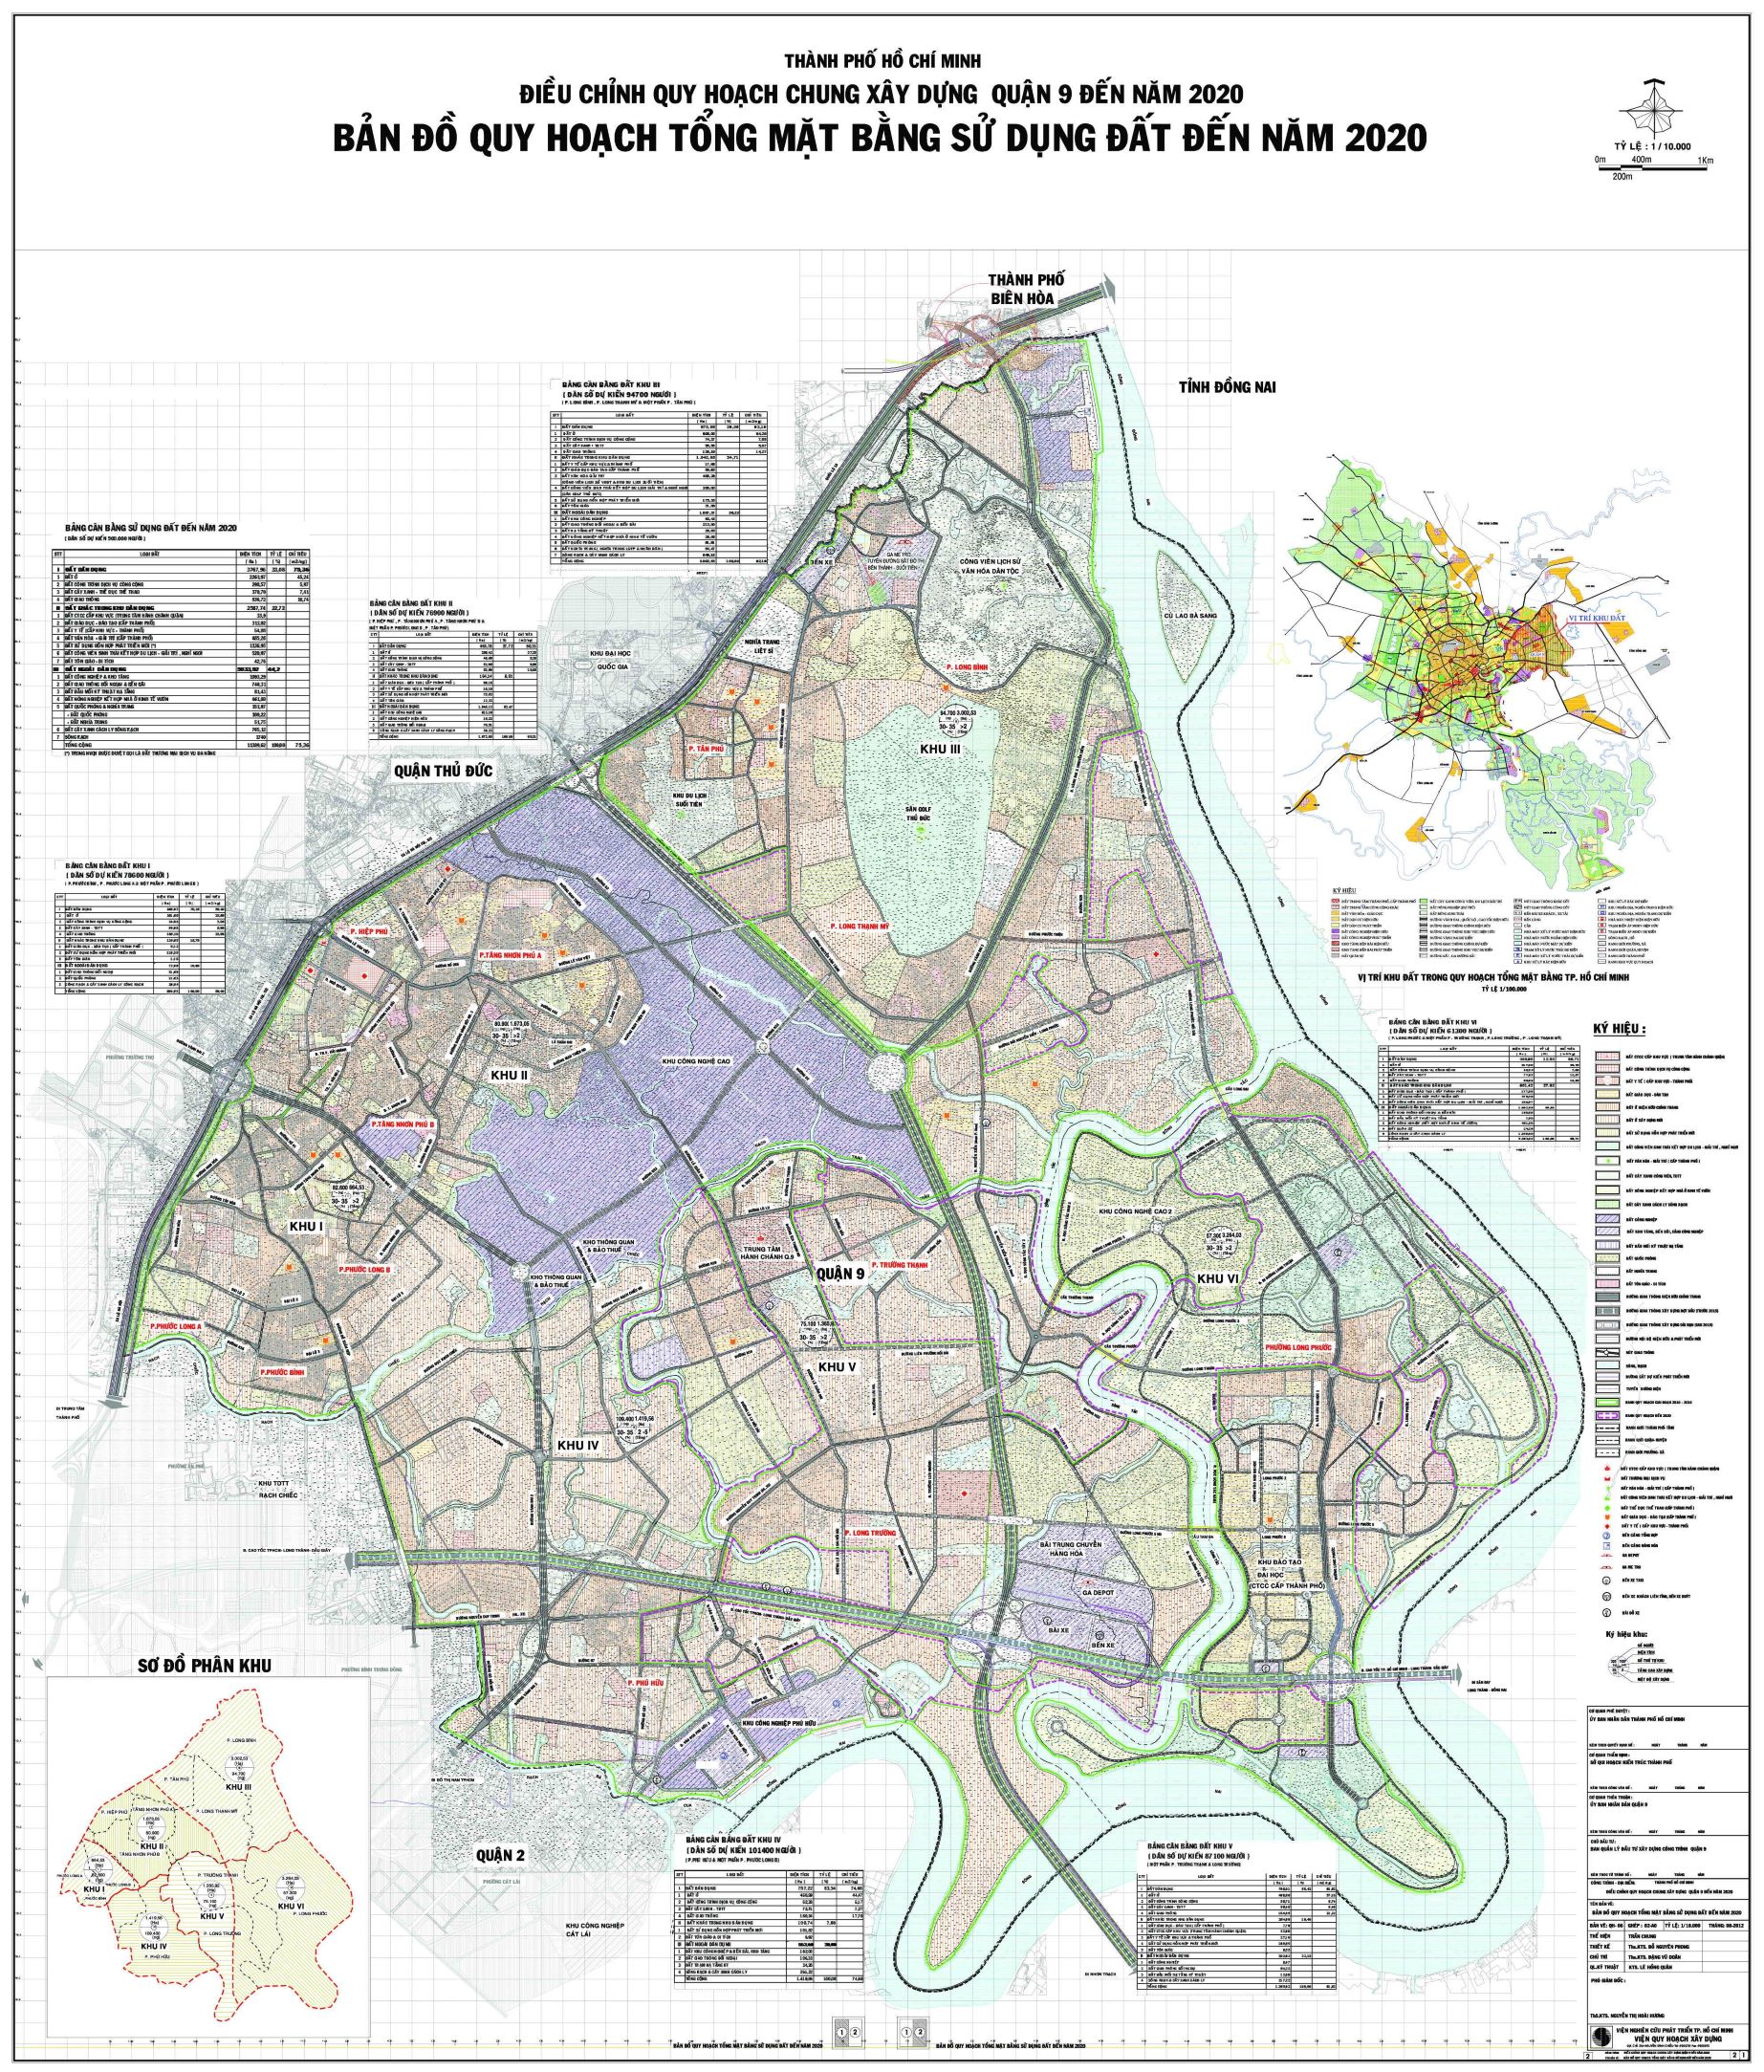 Bản đồ quy hoạch quận 9 - tổng mặt bằng sử dụng đất đến năm 2020